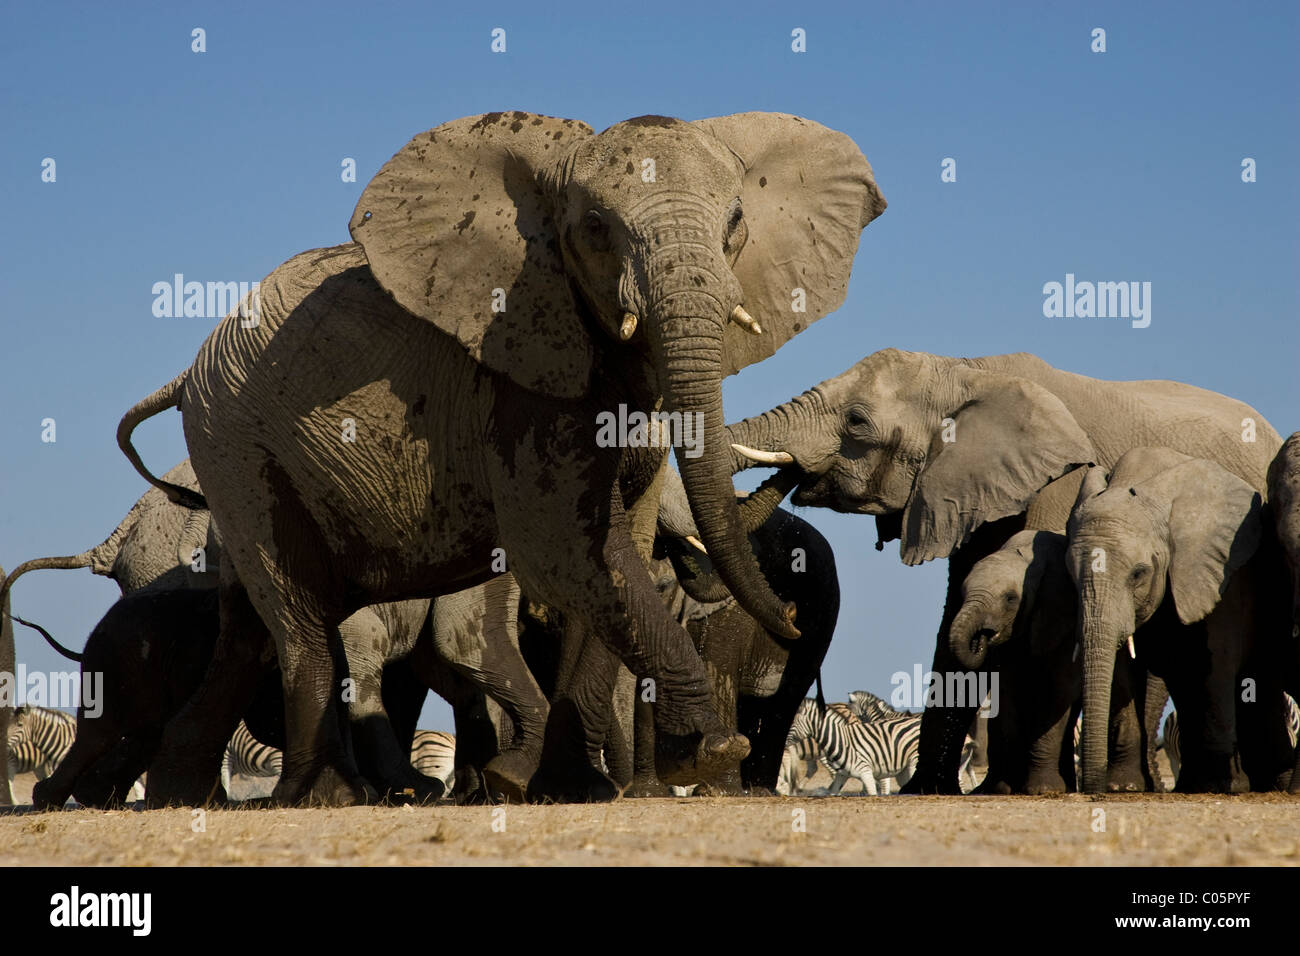 Angry elephant, Etosha National Park, Namibia. Stock Photo